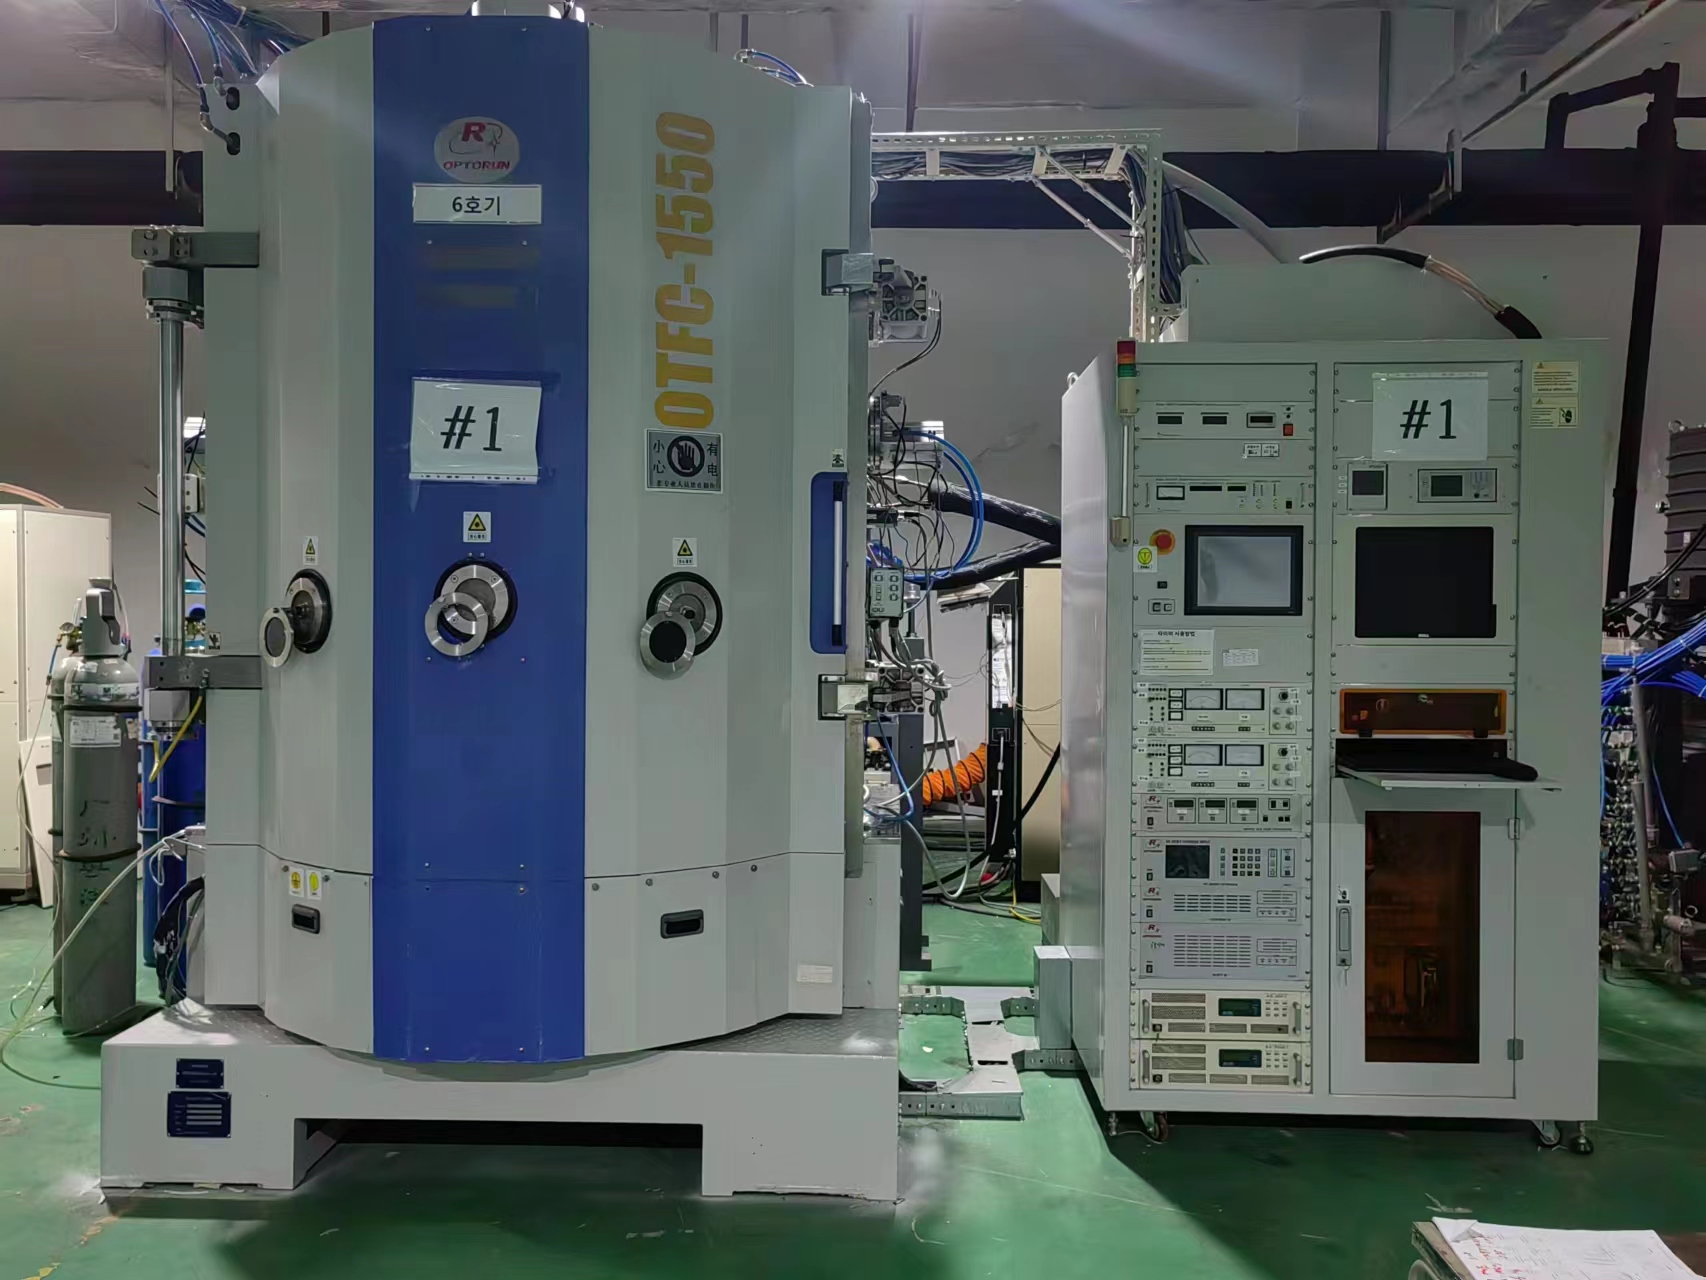 日本光弛1550真空电镀膜机 蒸发离子电镀机包安装保修